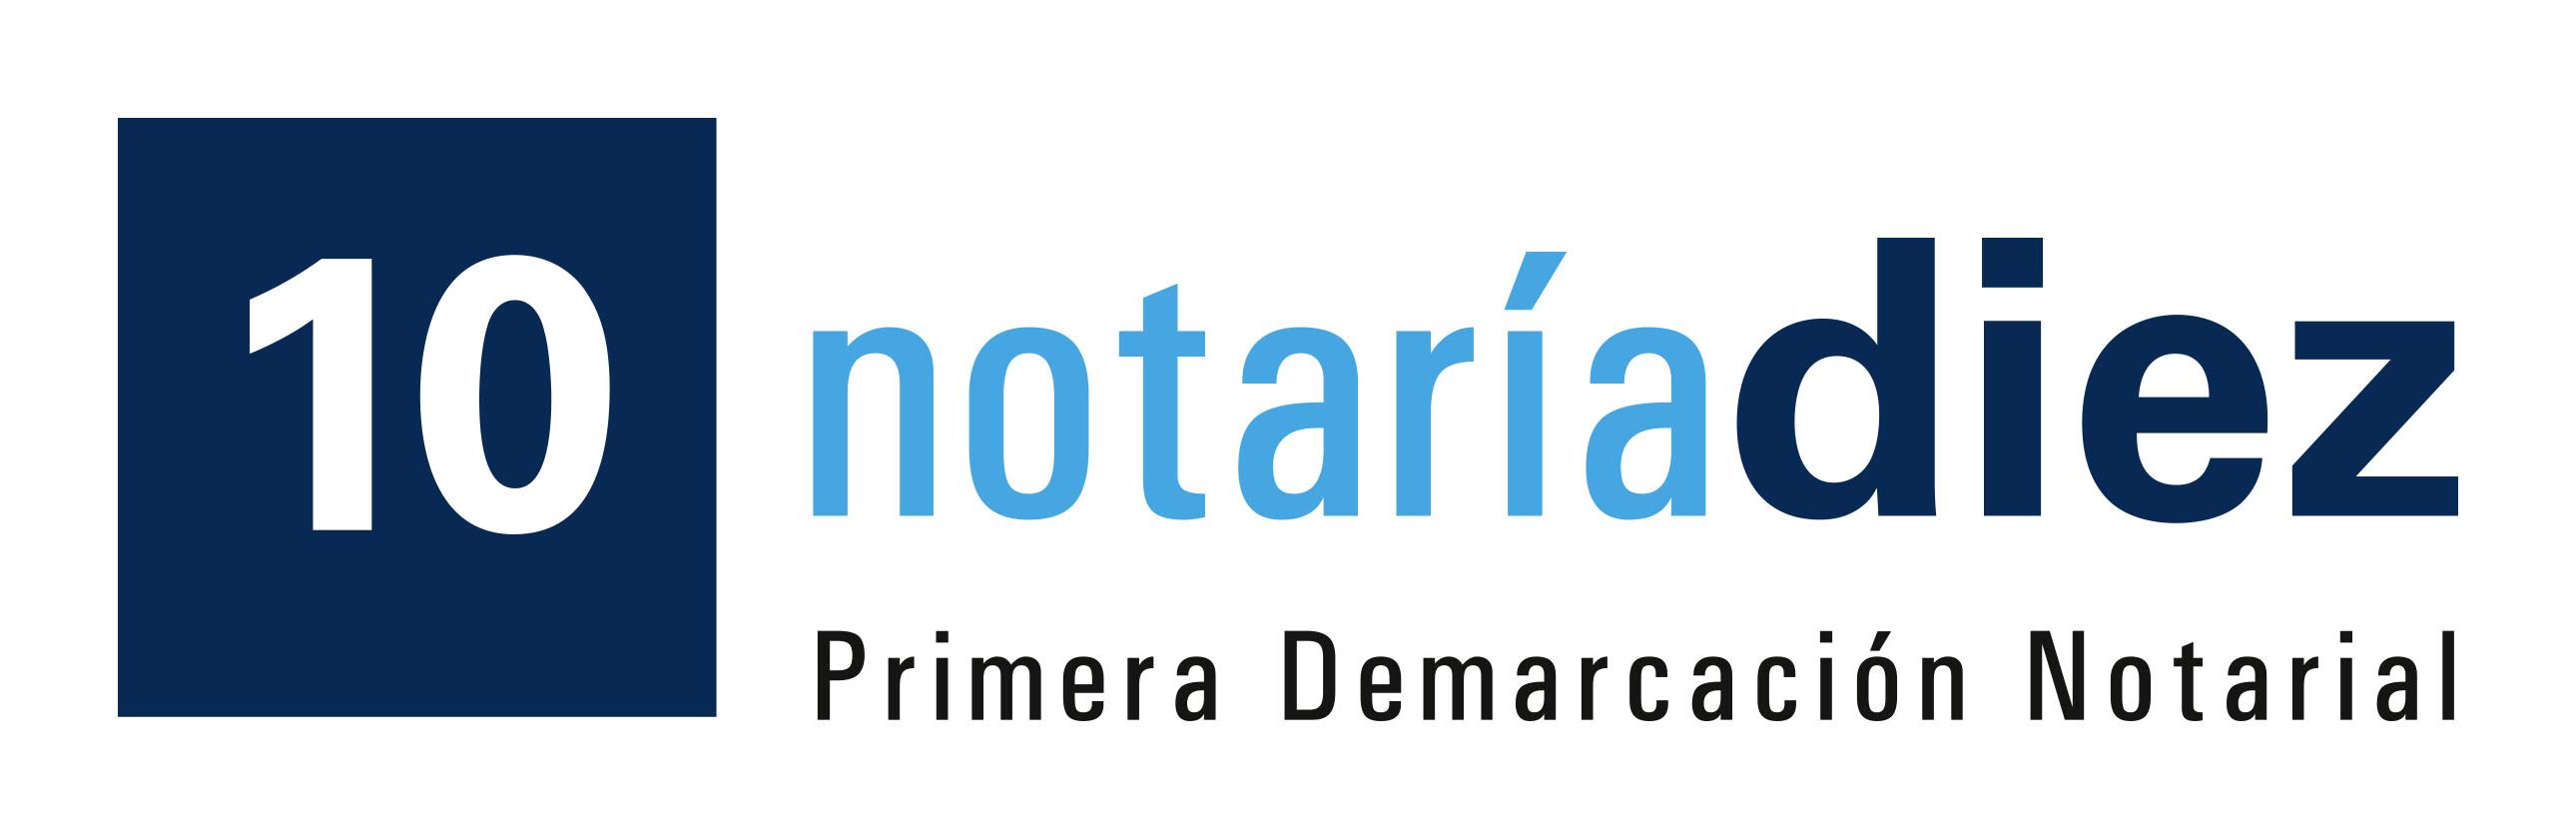 Notaría 10 Primera Demarcación Notarial Morelos